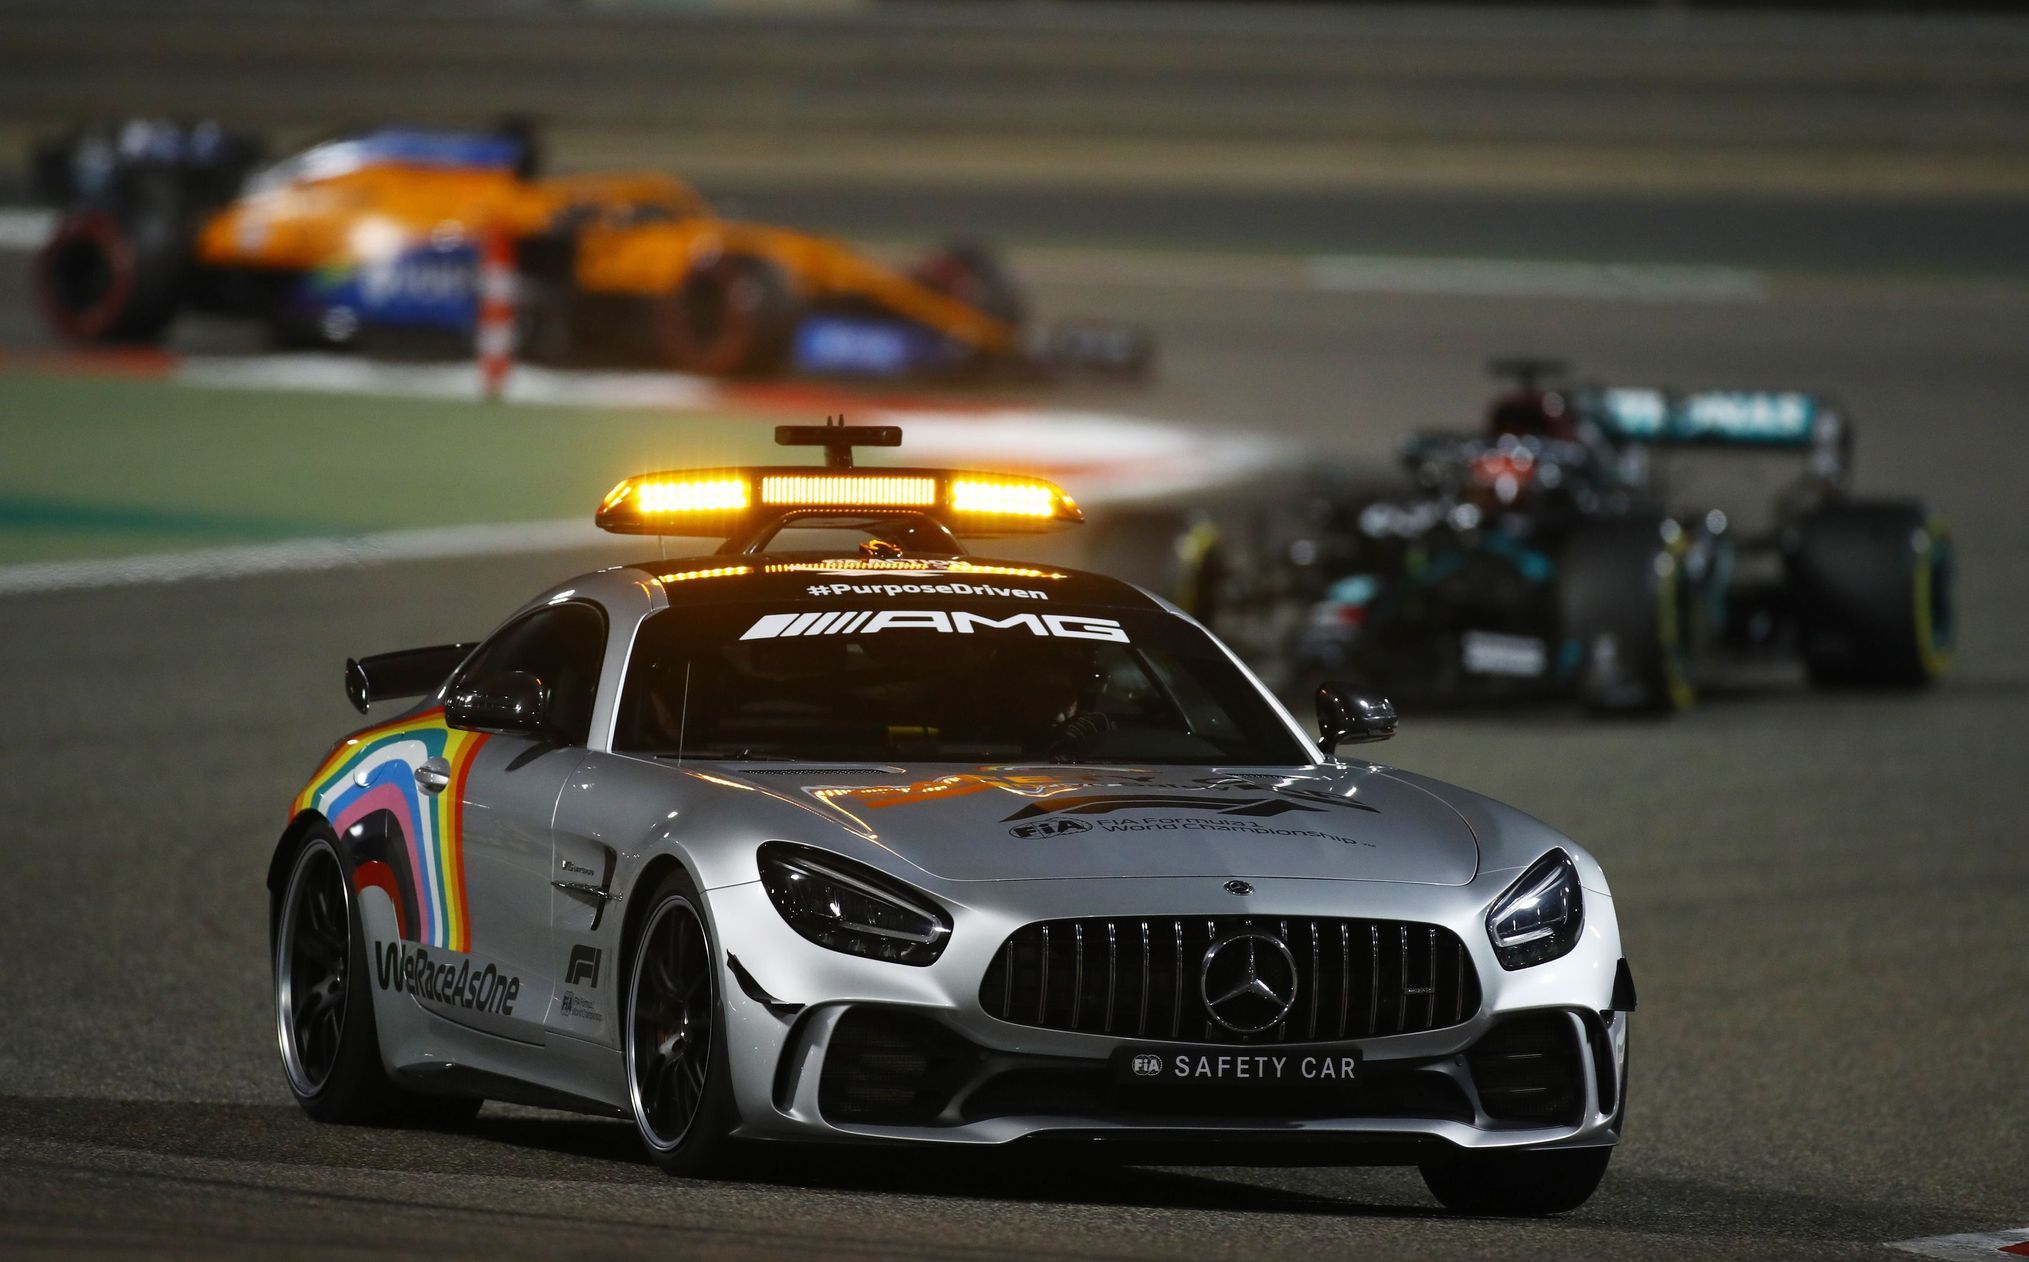 Safety car v čele závodního pole během Velké ceny Sáchiru F1 2021